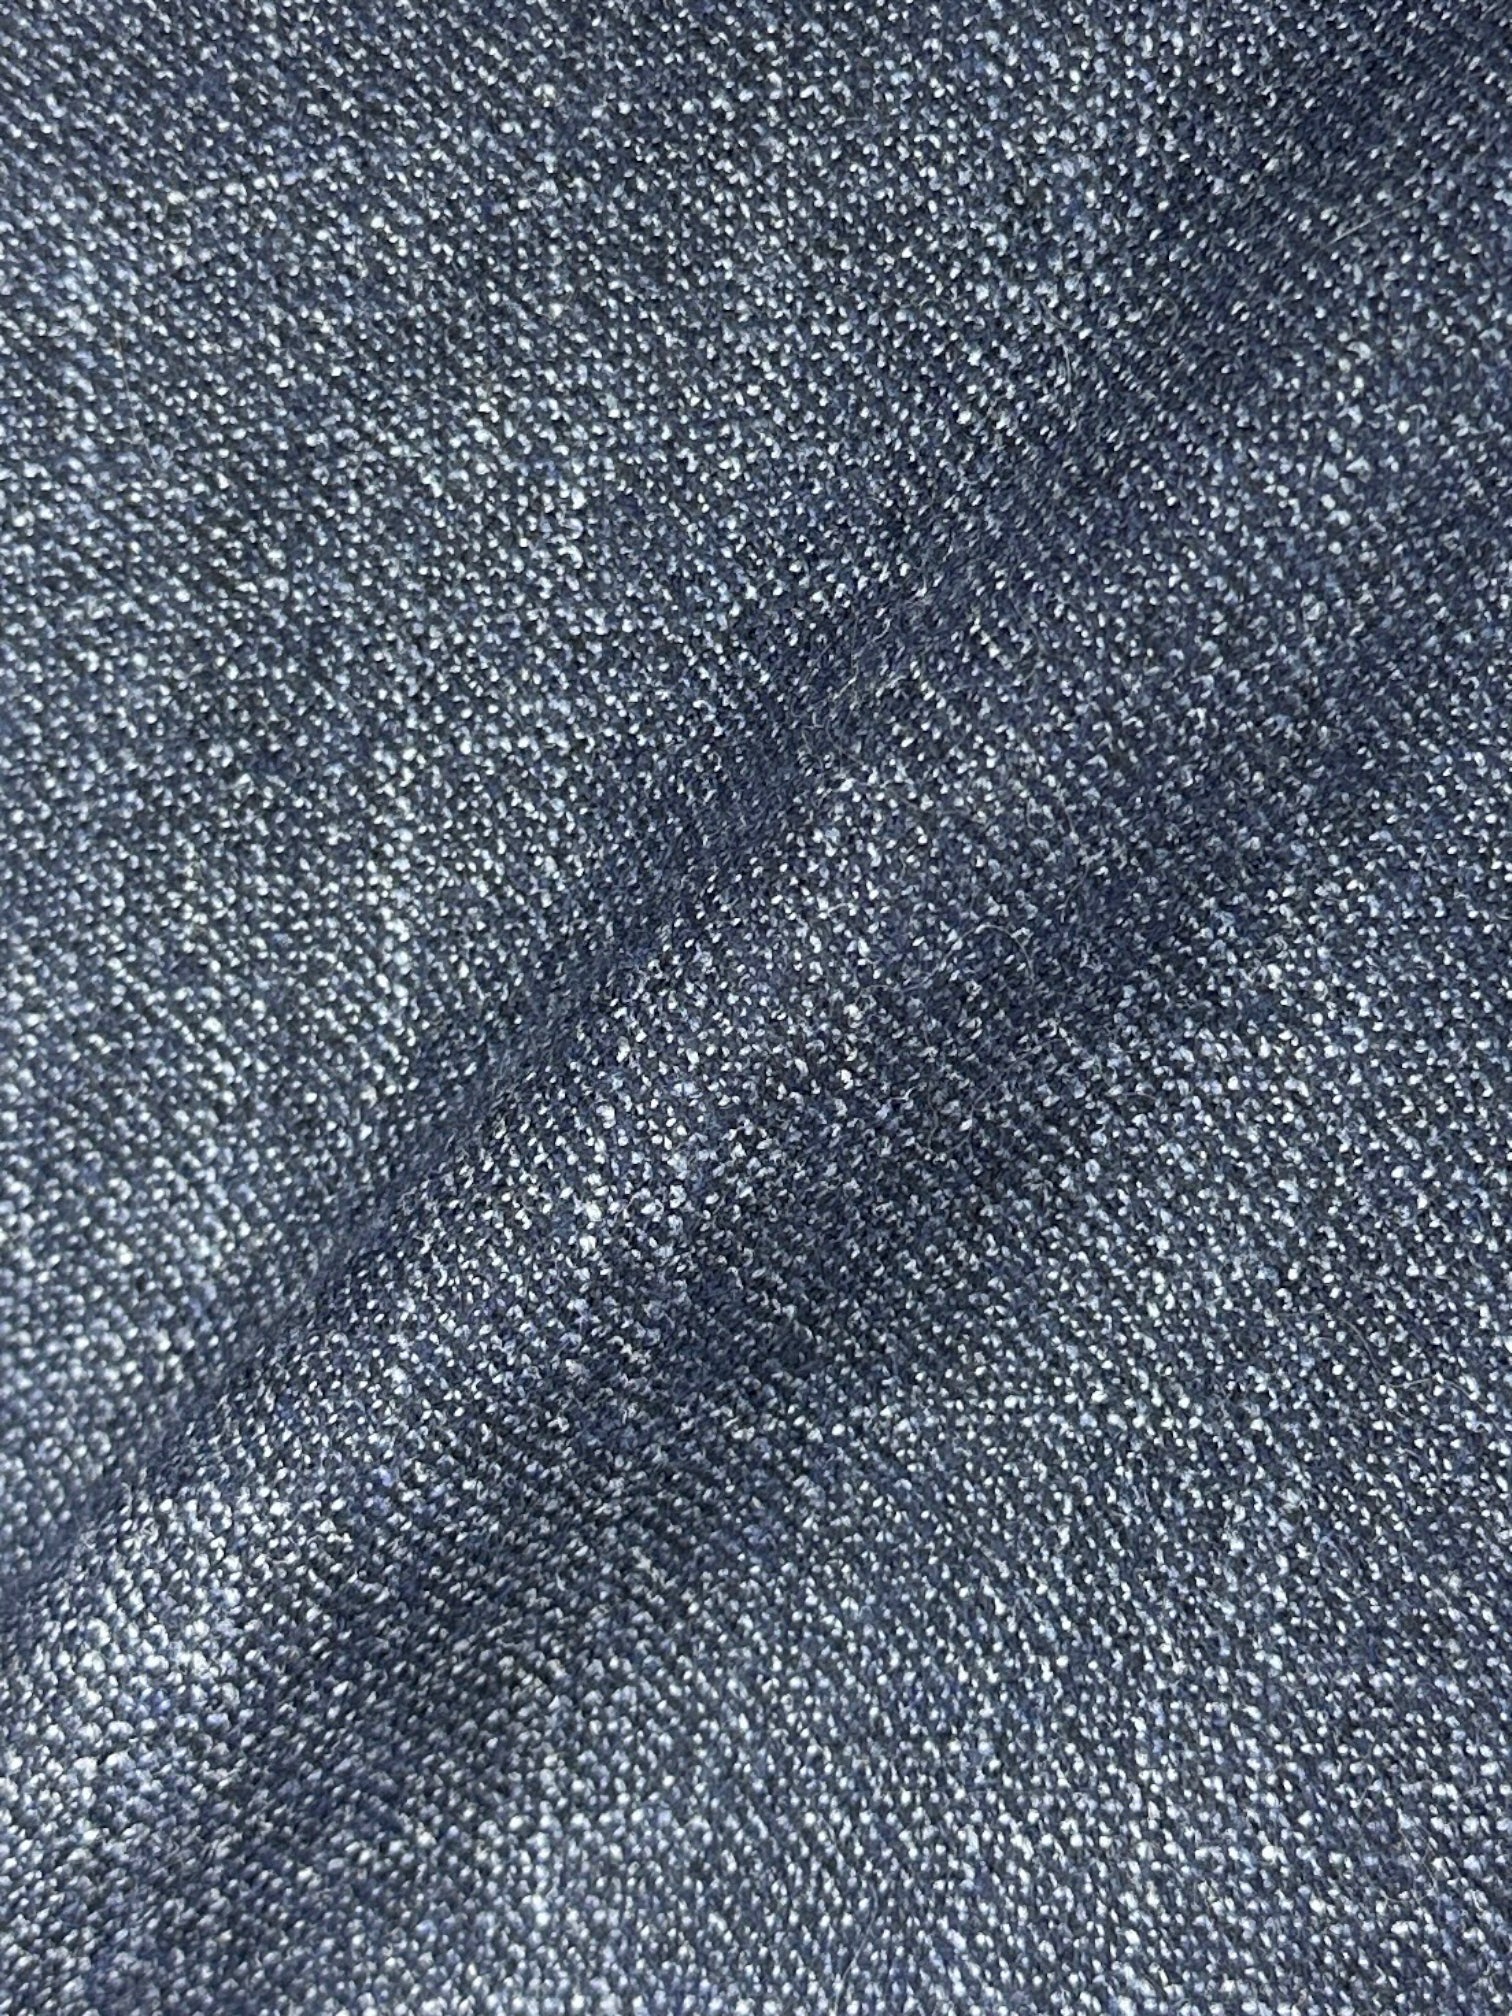 Corneliani blauw jasje van wol, zijde en kasjmier